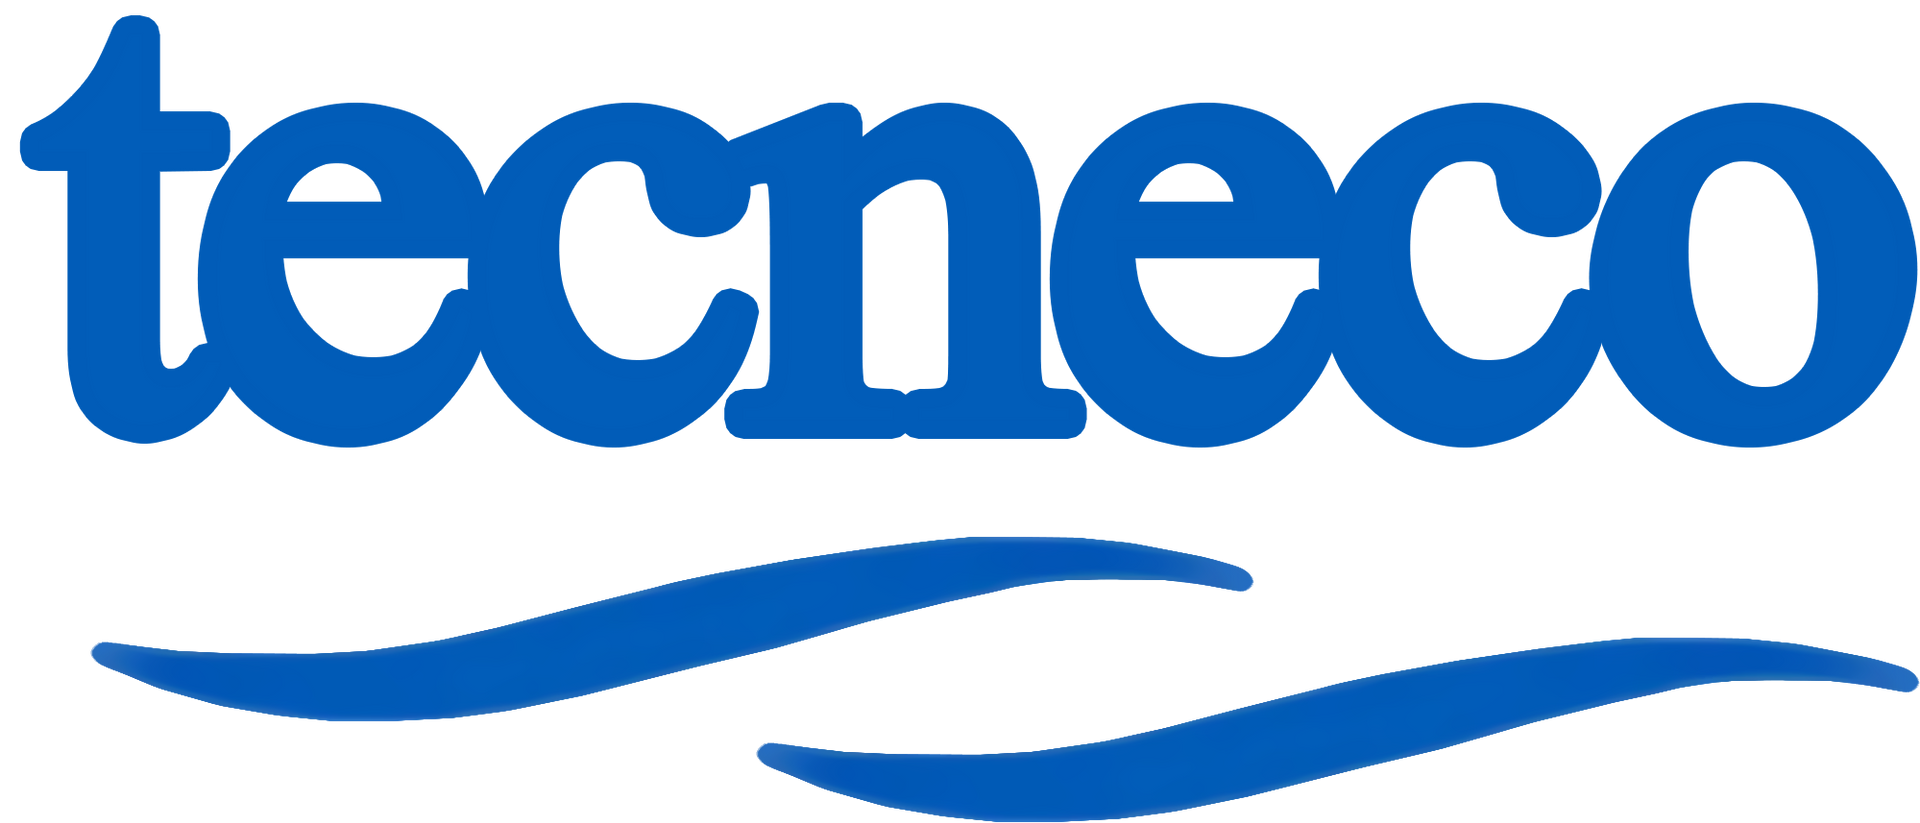 Macchine Pulizia Industriale Tecneco System Logo